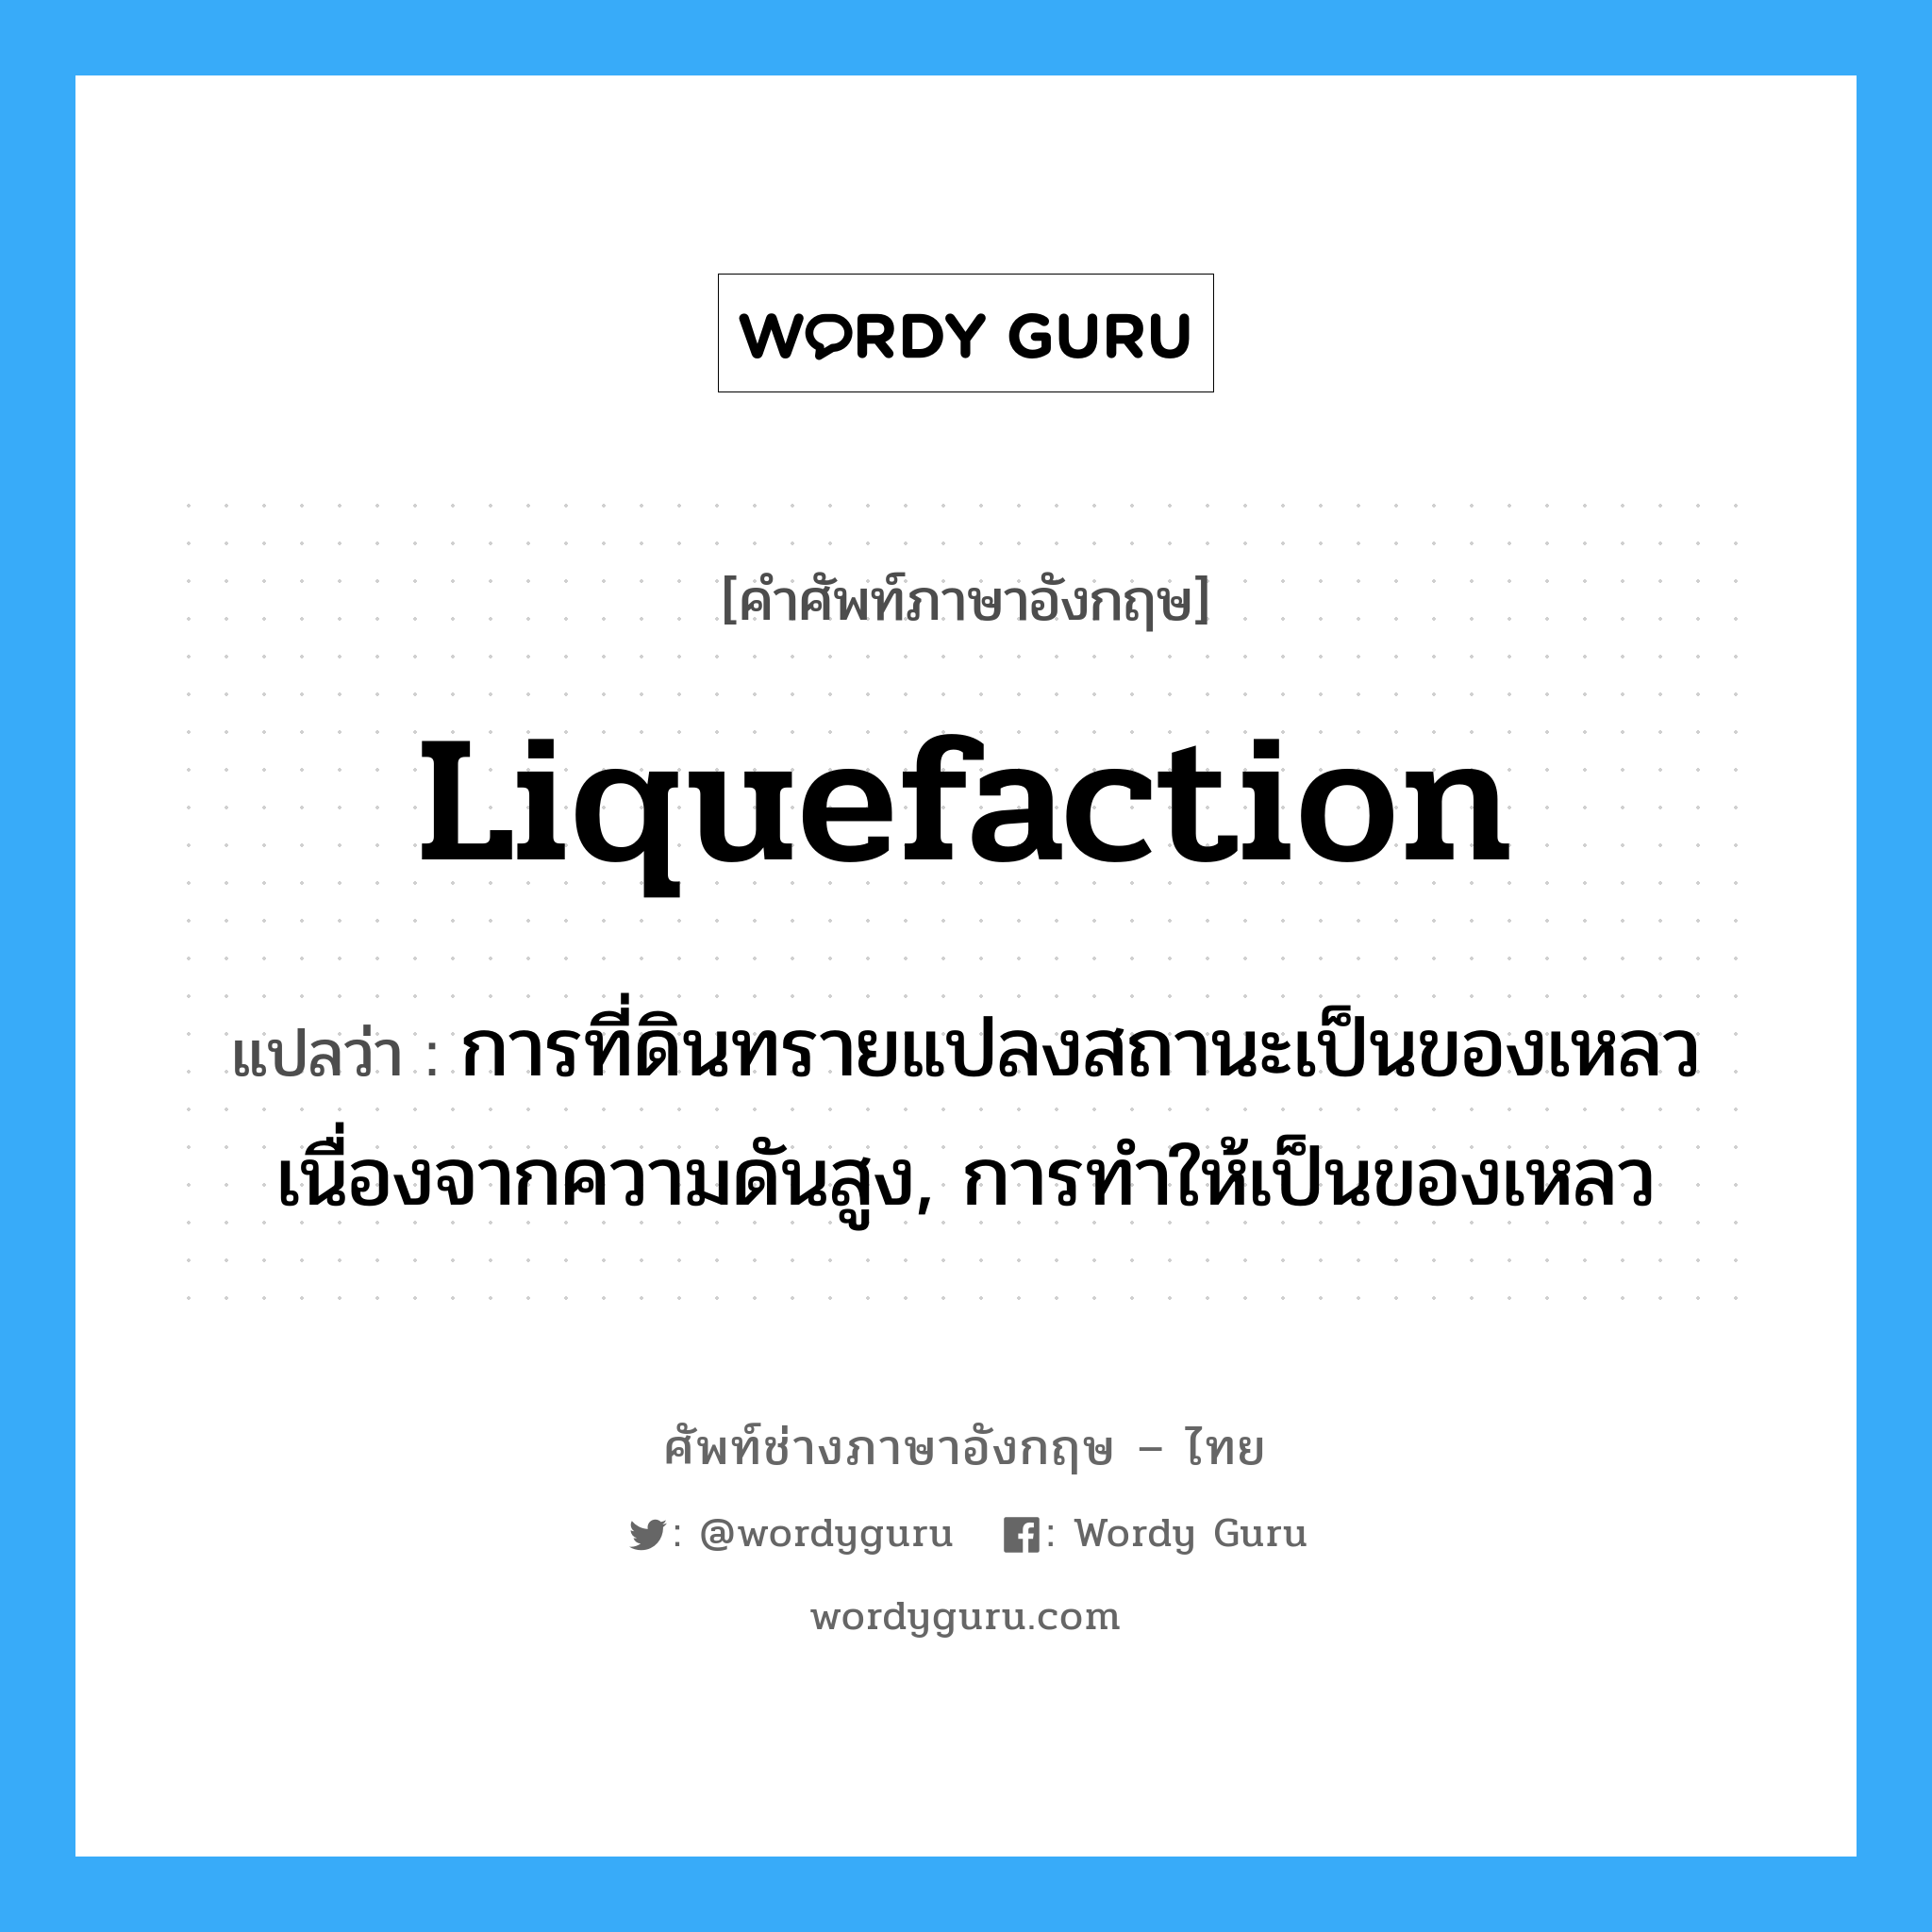 liquefaction แปลว่า?, คำศัพท์ช่างภาษาอังกฤษ - ไทย liquefaction คำศัพท์ภาษาอังกฤษ liquefaction แปลว่า การที่ดินทรายแปลงสถานะเป็นของเหลว เนื่องจากความดันสูง, การทำให้เป็นของเหลว